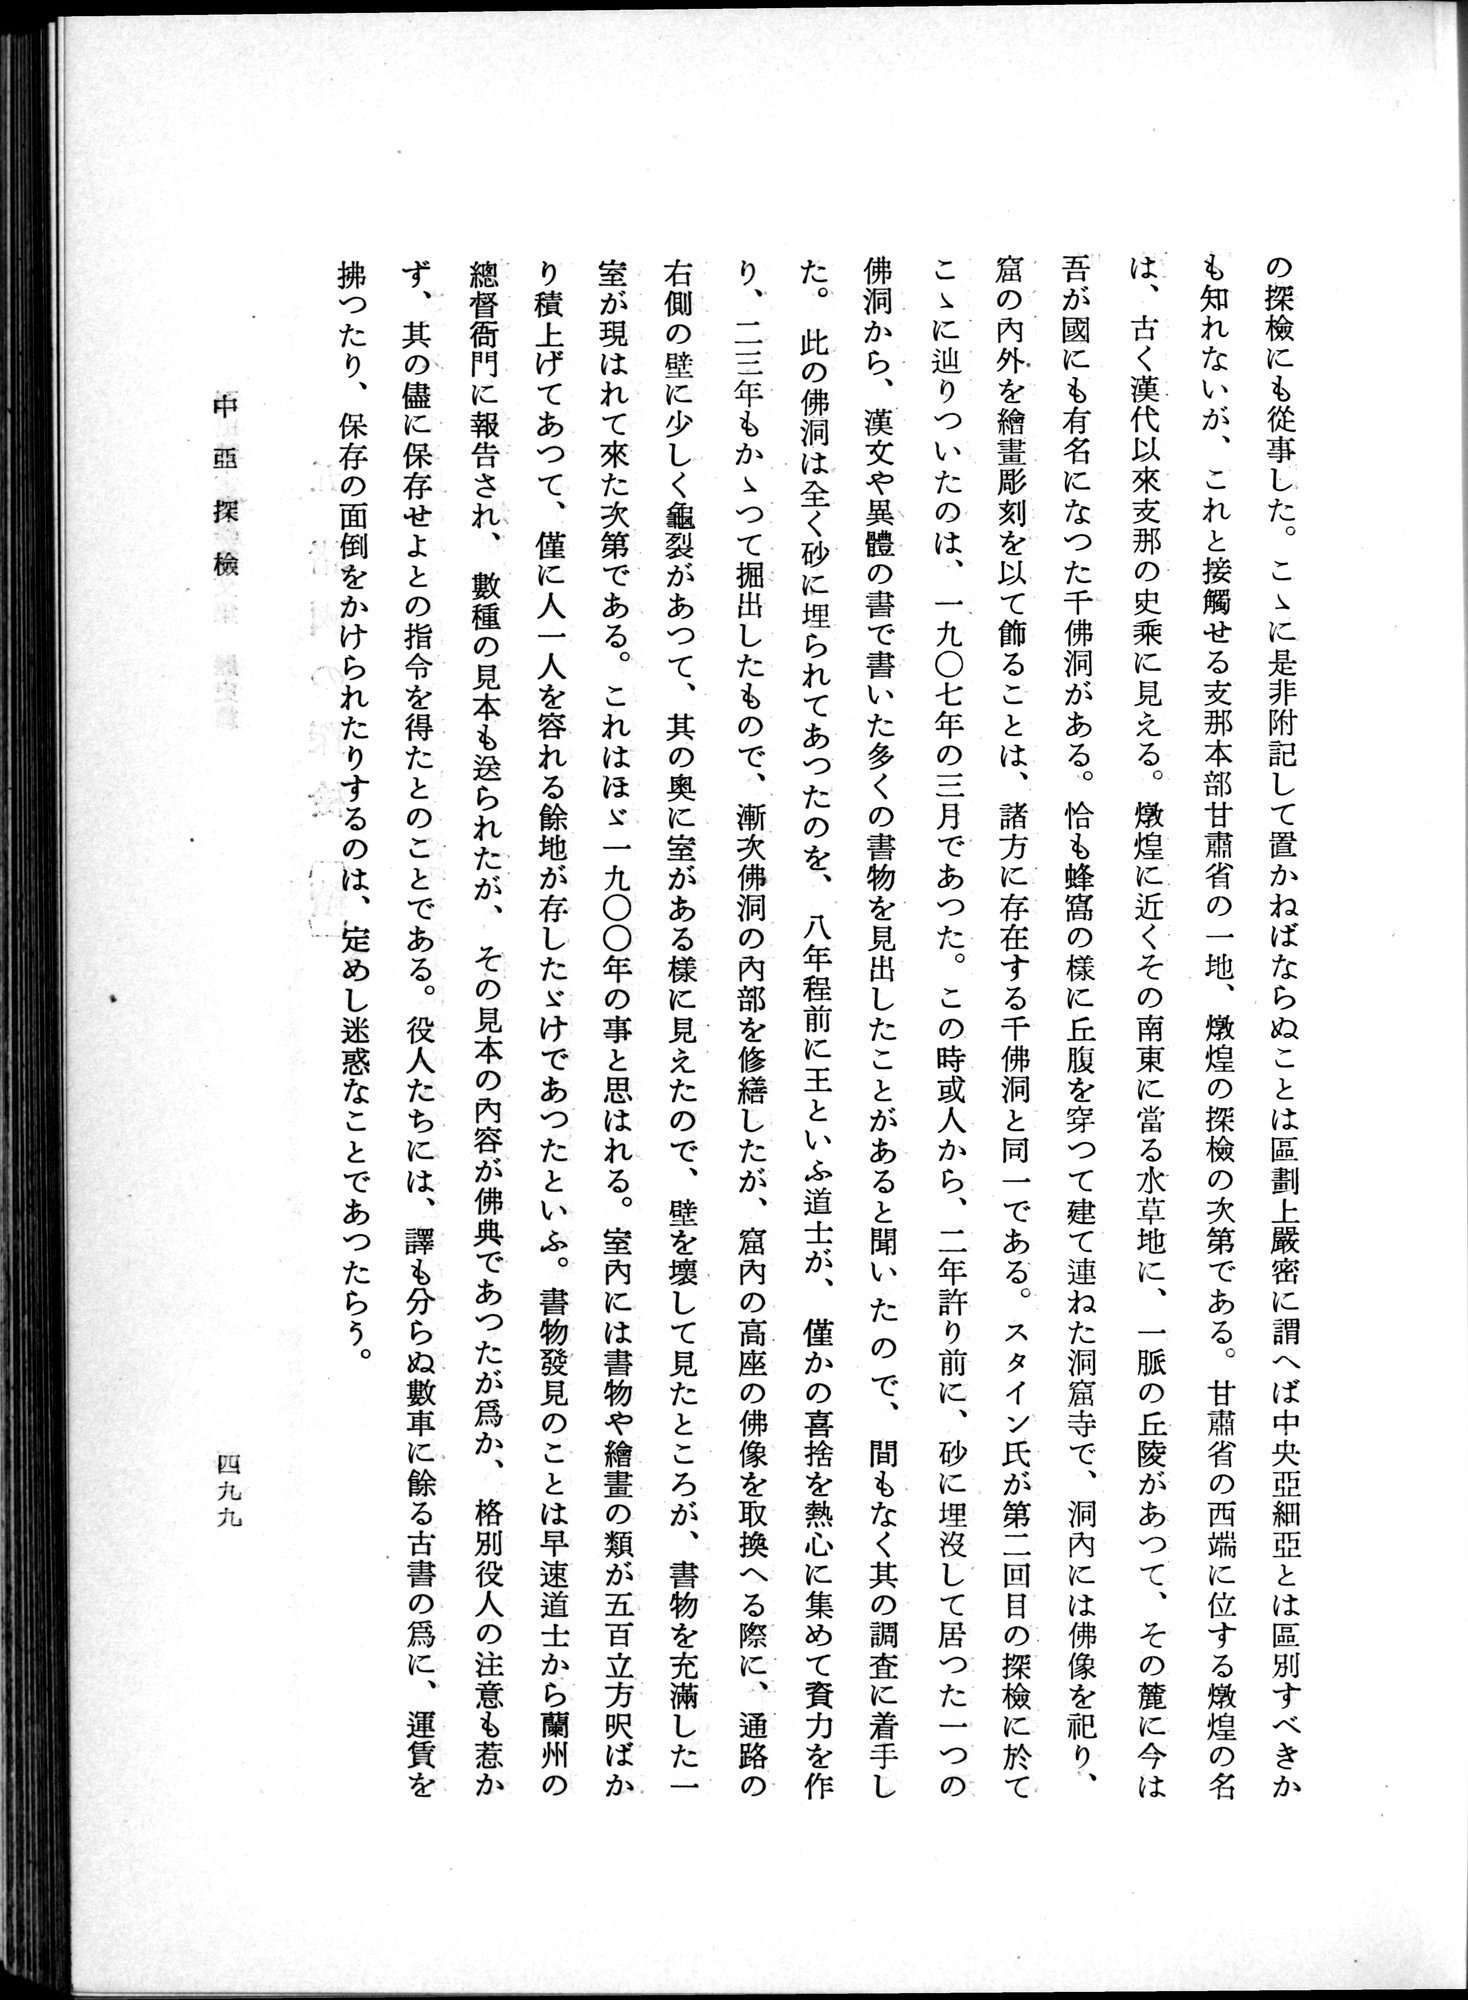 羽田博士史学論文集 : vol.1 / Page 537 (Grayscale High Resolution Image)